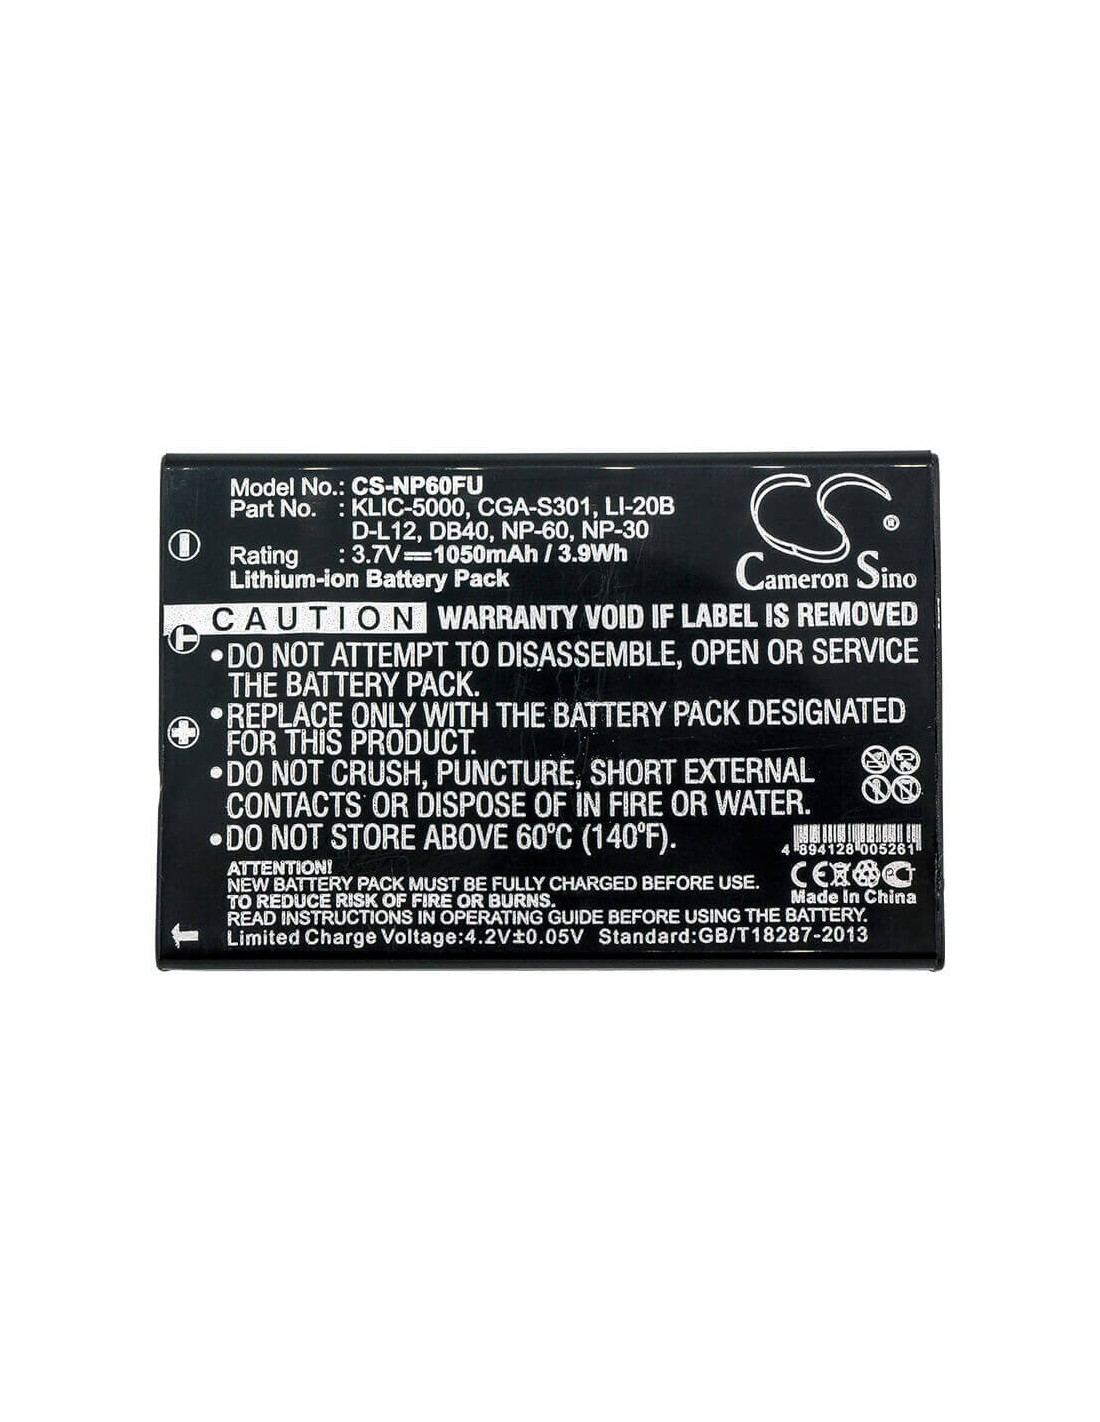 Battery for Lumicron4013, Dv-5, Ee-pack-33, Ldc-4013, Ldc-4230, 3.7V, 1050mAh - 3.89Wh